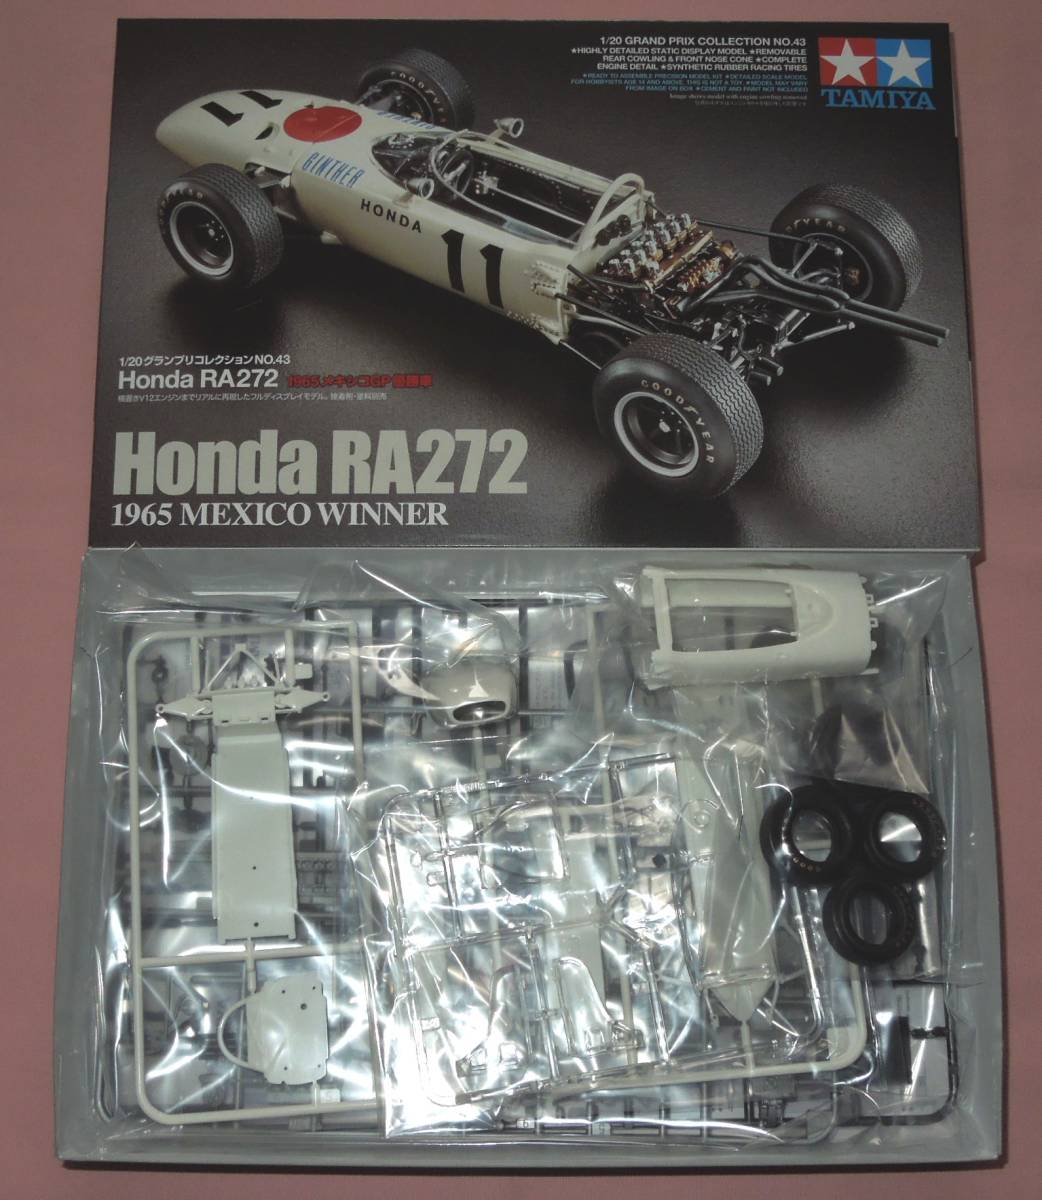 76 Off タミヤ Honda ホンダ Ra272 1 グランプリコレクション No 43 1965 メキシコgp 優勝車 Coplawfirm Com